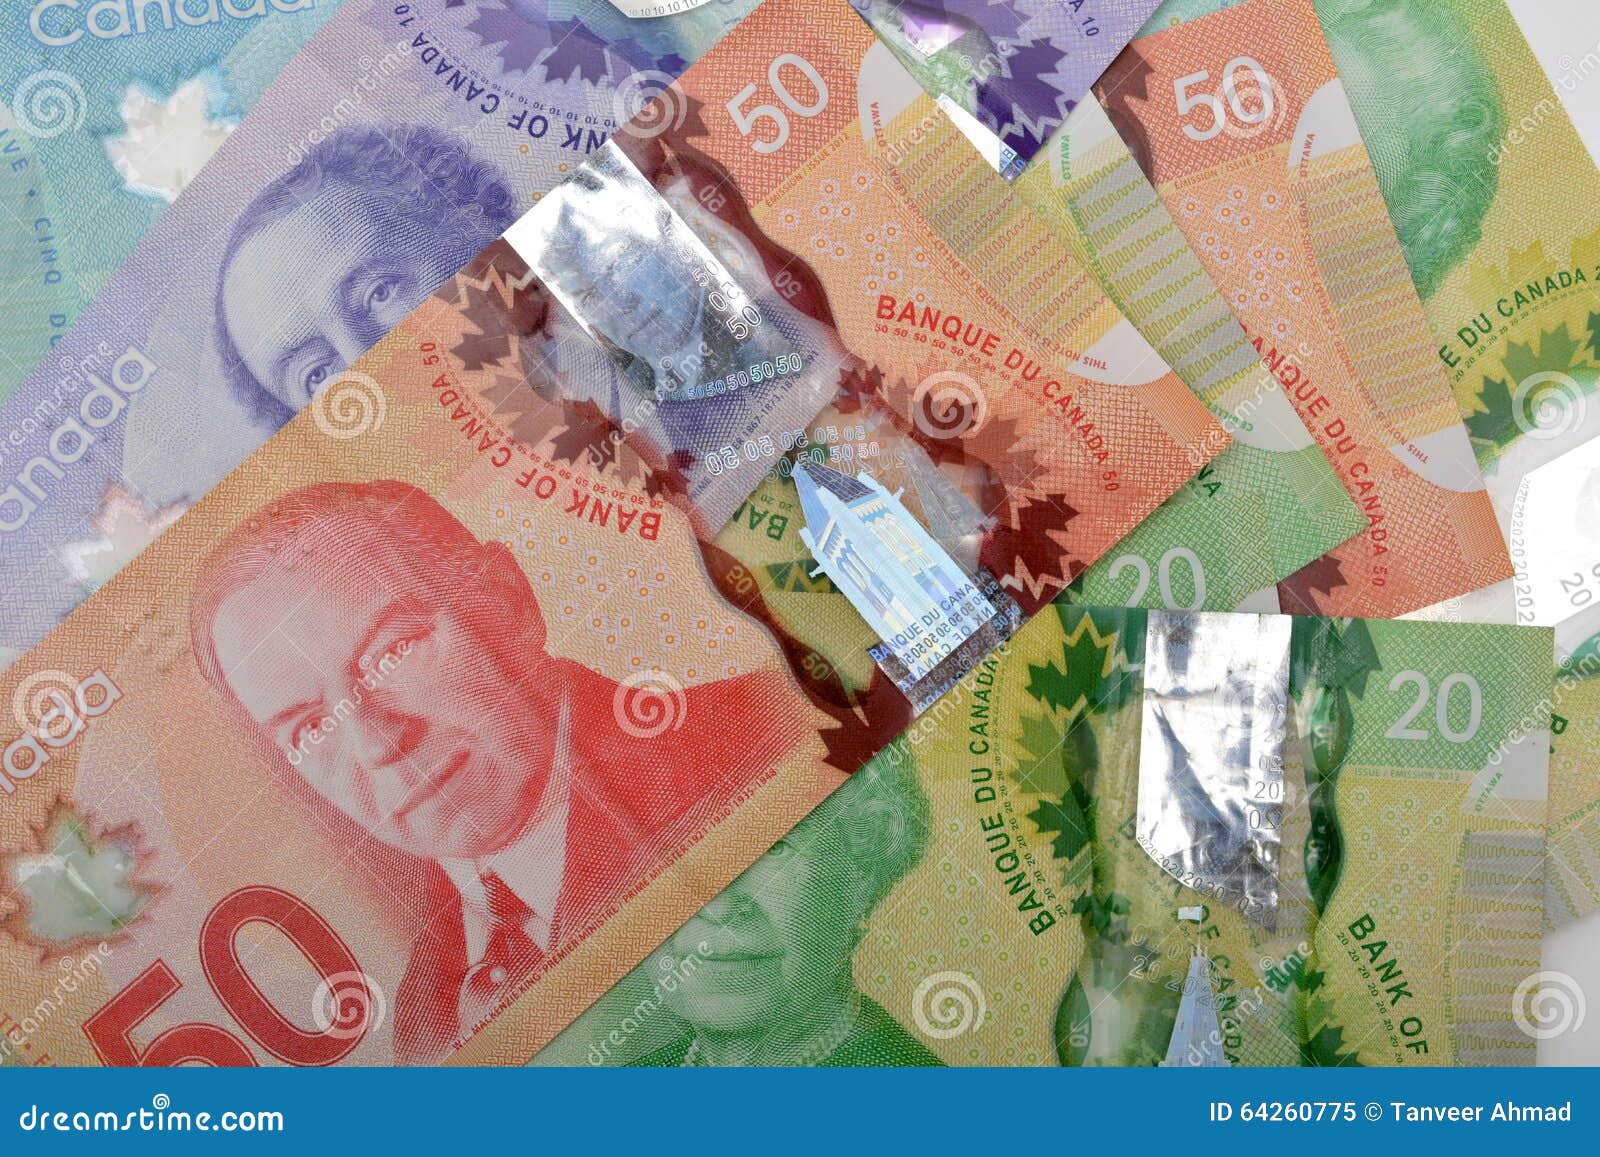 加拿大货币货币 编辑类库存照片. 图片 包括有 一百, 新建, 消费, 货币, 票据, 横幅提供资金的, 美元 - 6955598